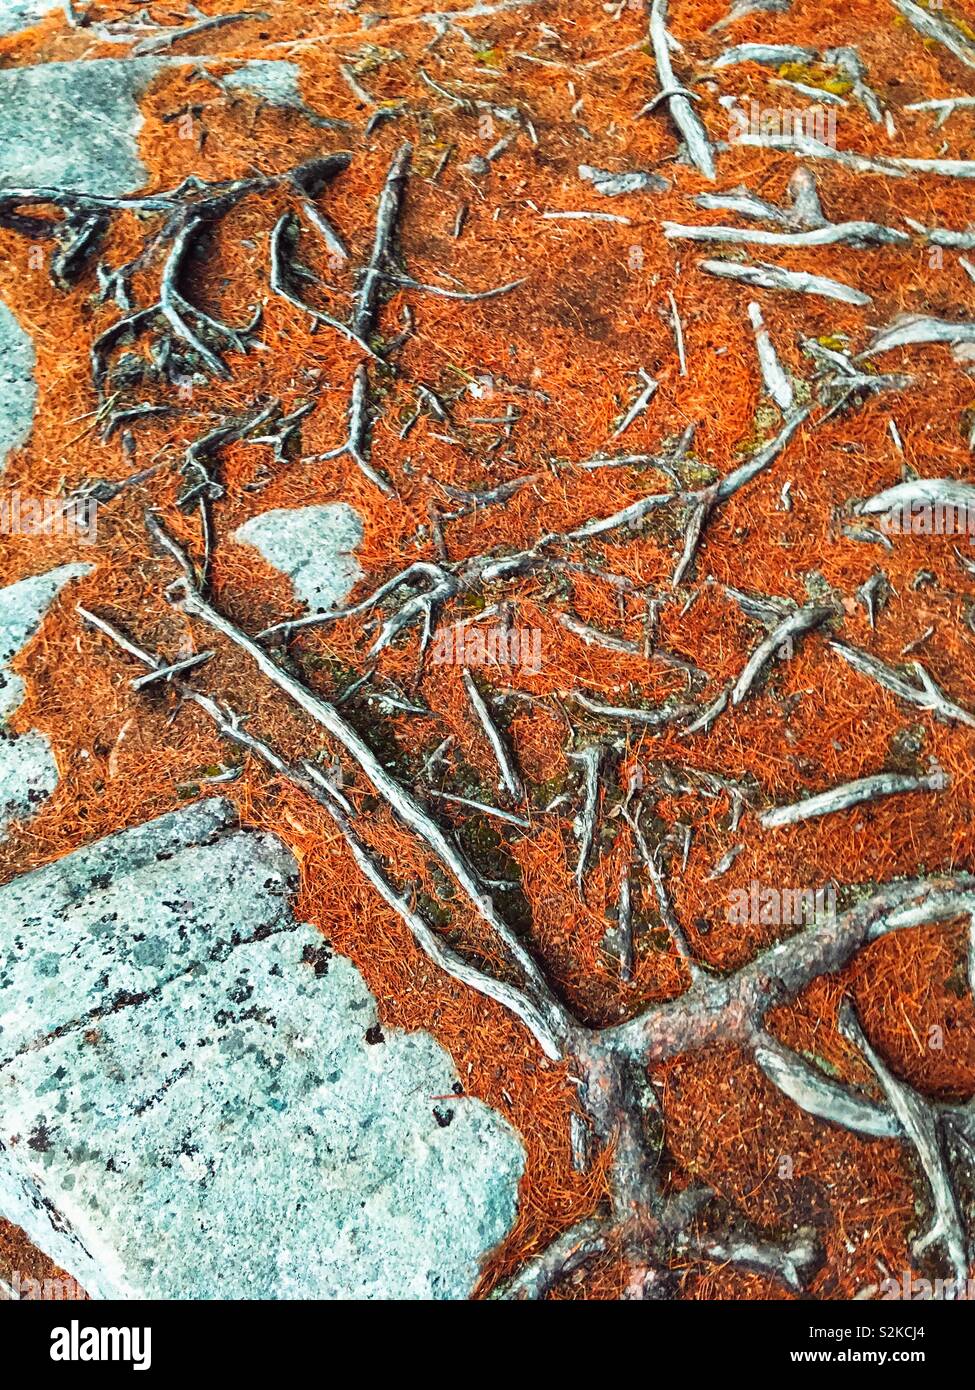 Les racines des arbres exposés dans les rochers, le sol couvert de paillis brun rougeâtre. Banque D'Images